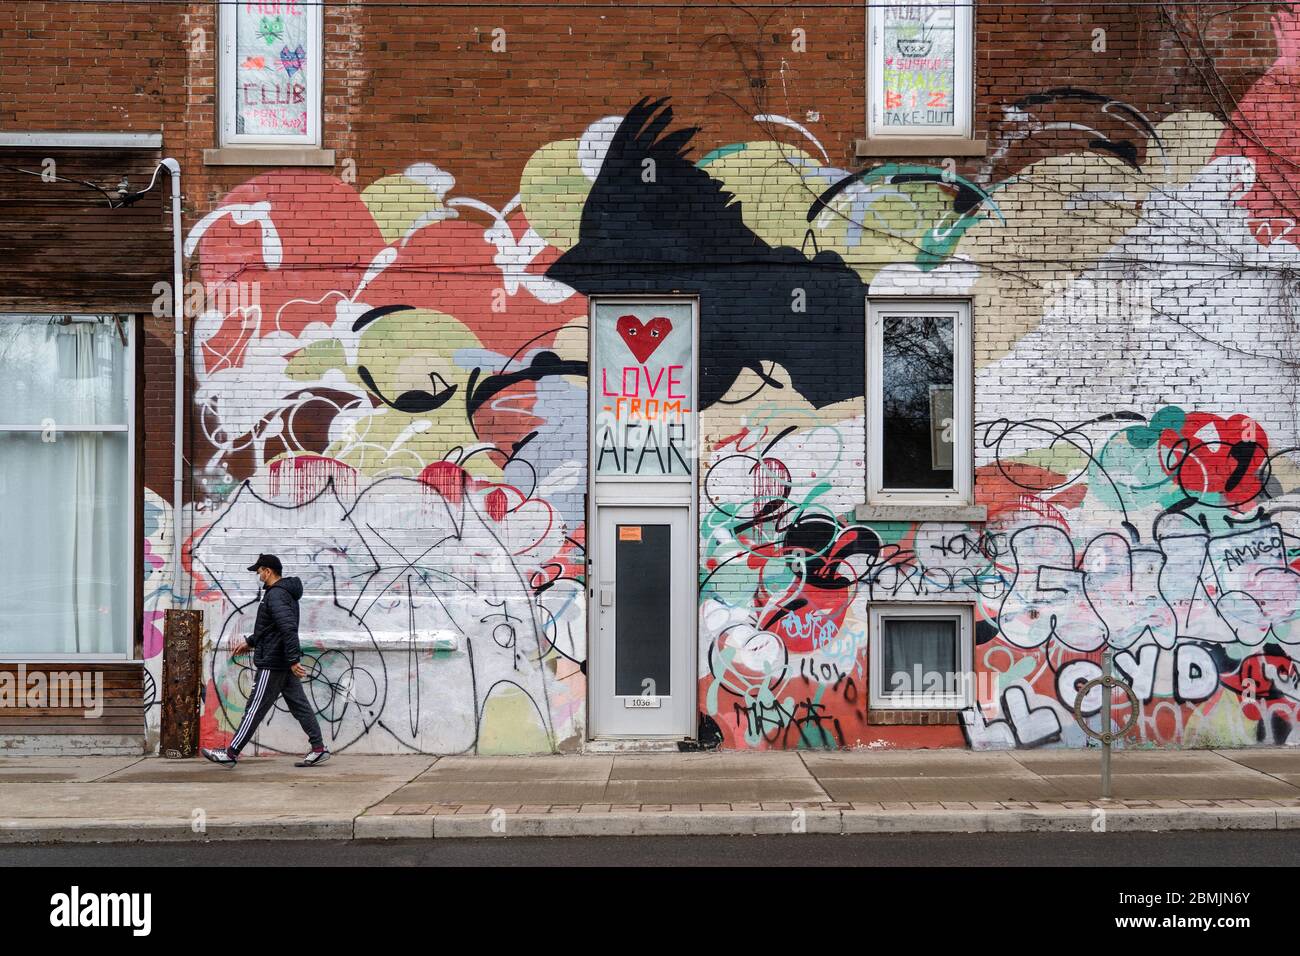 Toronto, Canadá, un hombre local con máscara facial camina frente a una colorida pared con signos temáticos de distanciamiento social durante la pandemia del coronavirus. Foto de stock